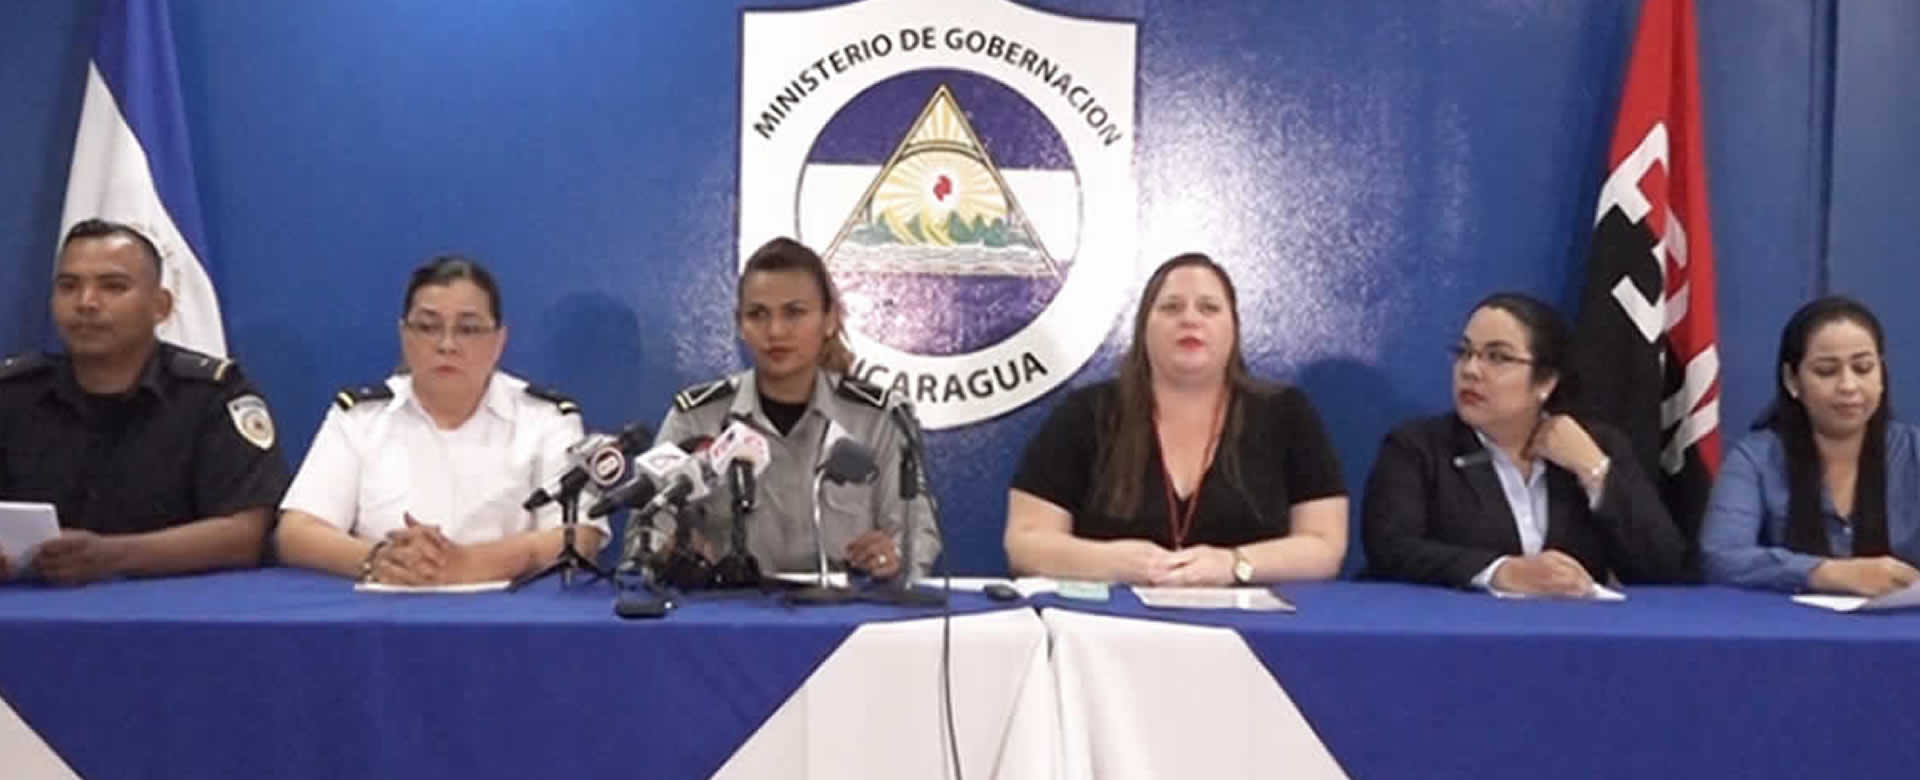 MIGOB brinda informe de los servicios brindados al pueblo nicaragüense